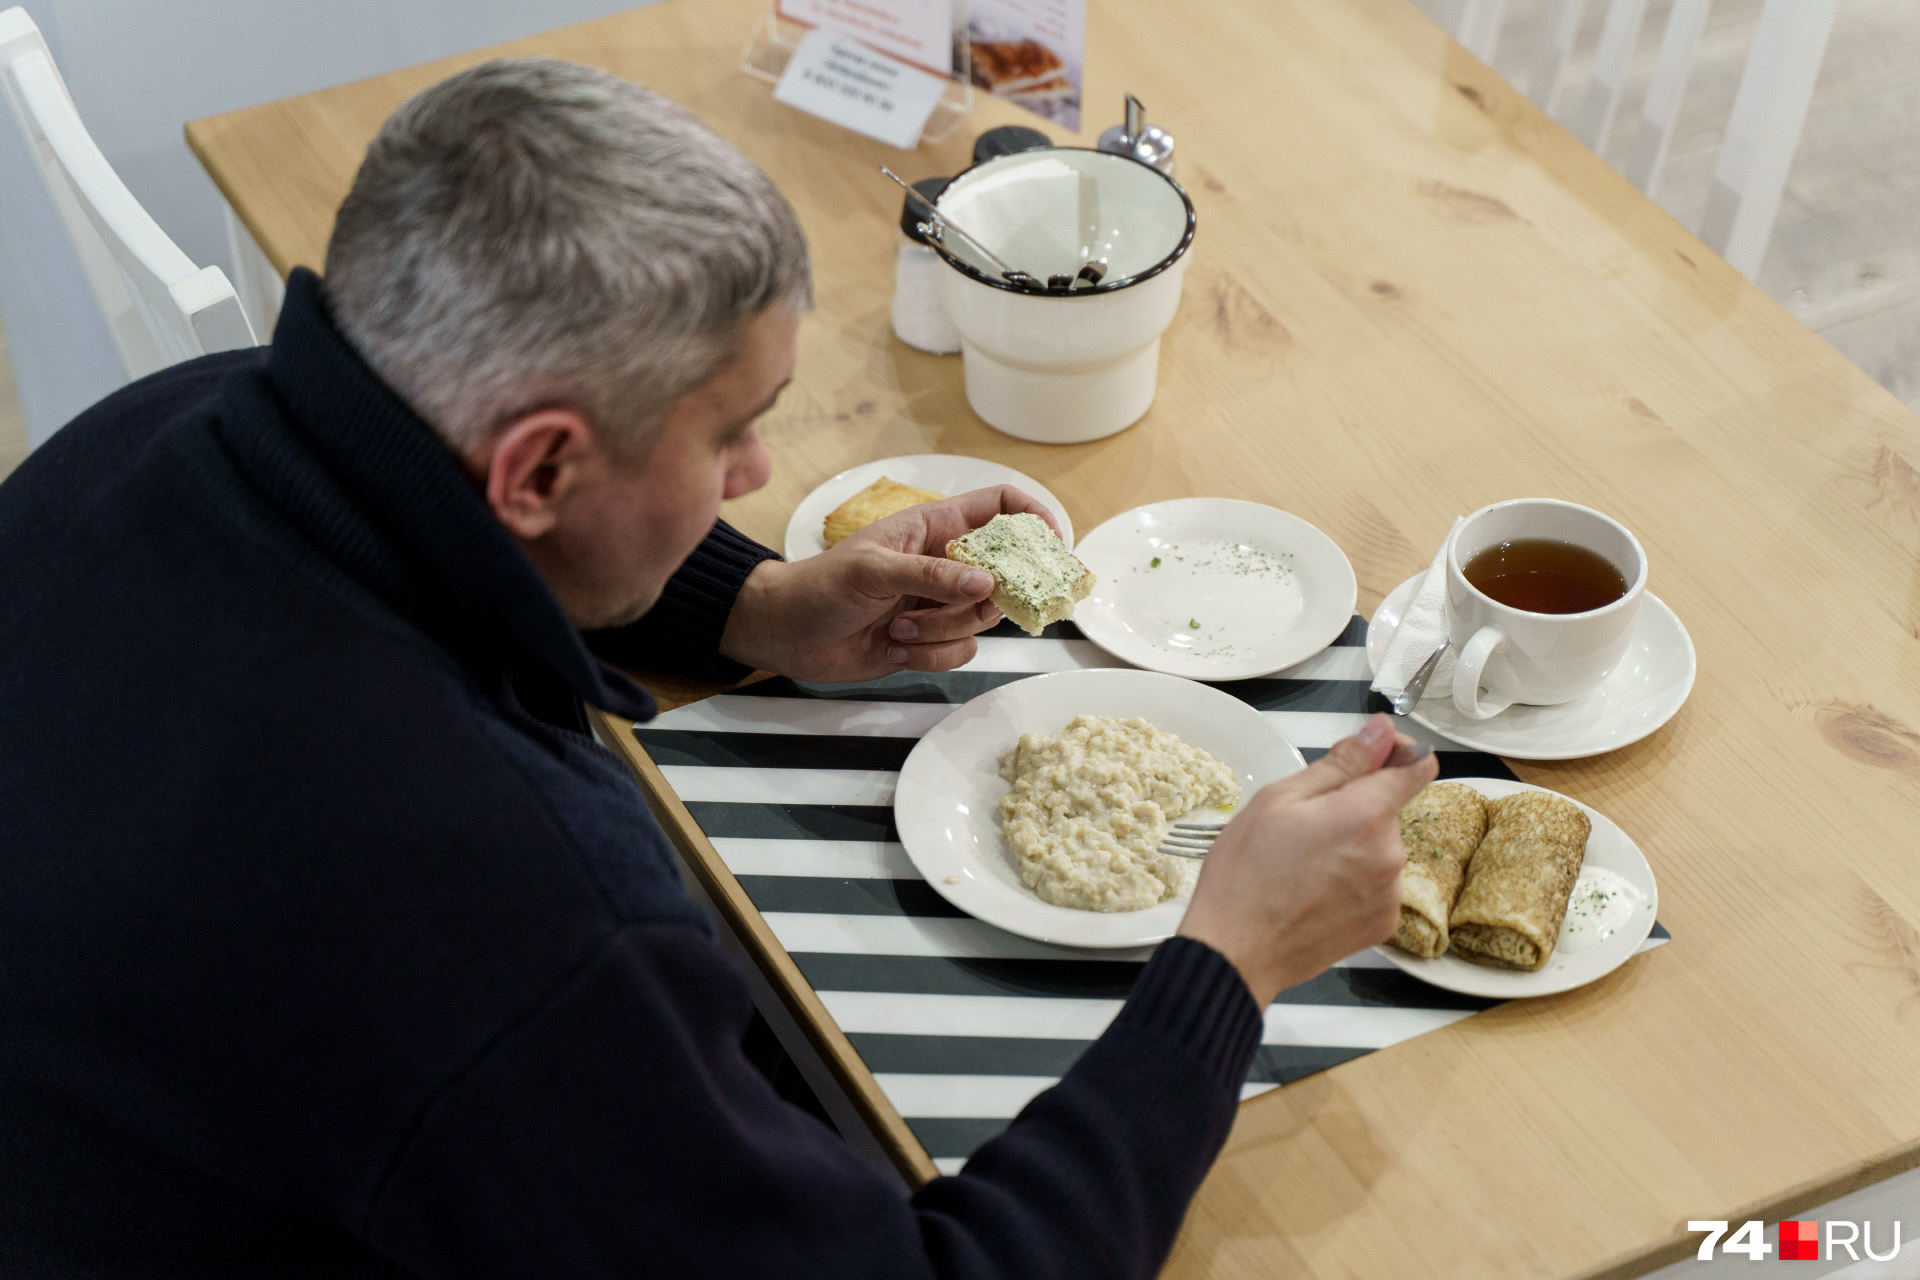 Даже завтрак выходит довольно сытный: омлет, сырники, круассан, тост с грибным паштетом, булочка, чай, и всё это за 100 рублей